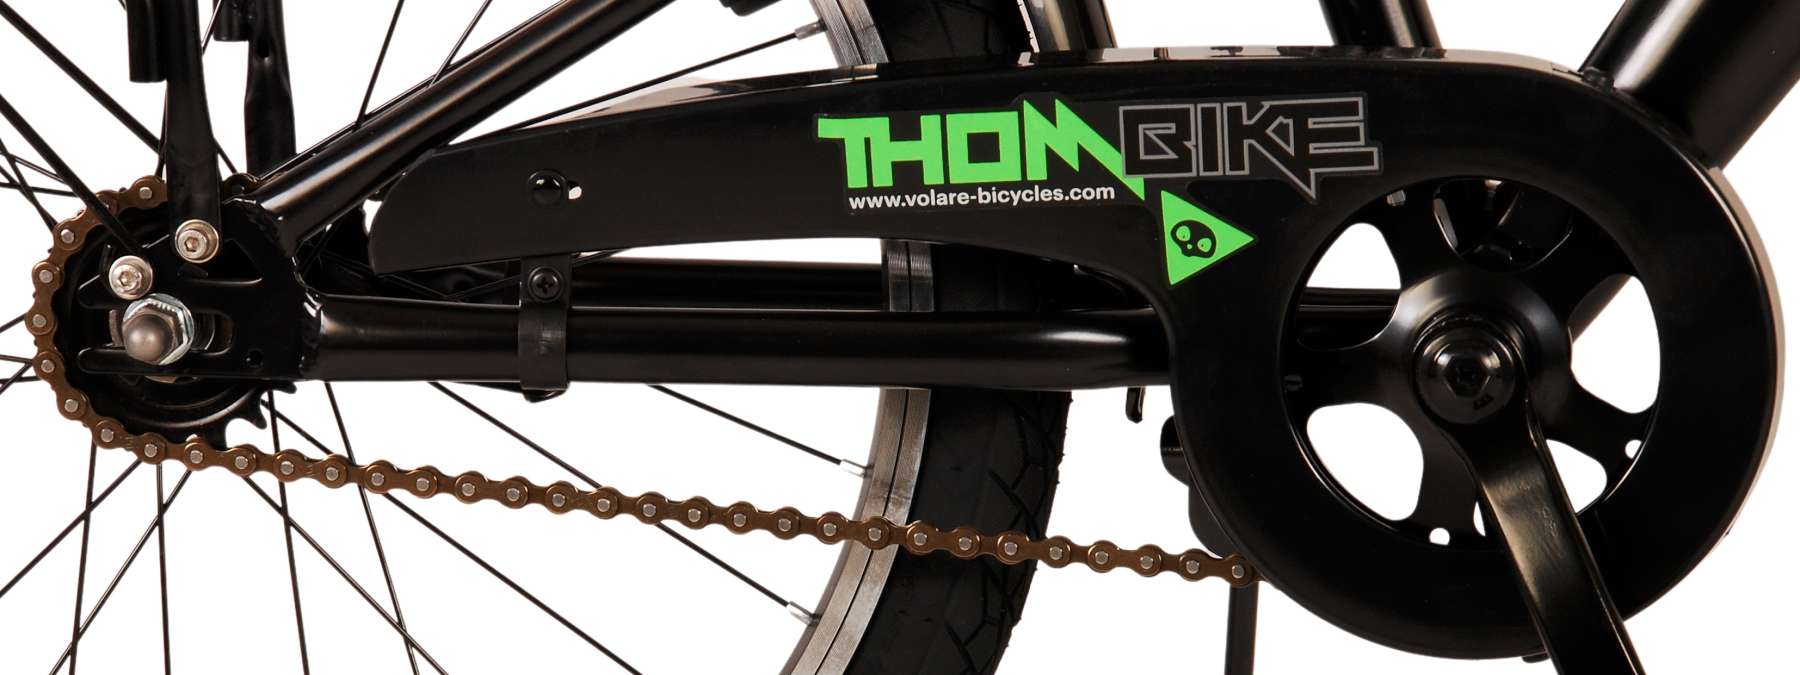 Thombike_20_inch_groen_zwart_-_5-W1800